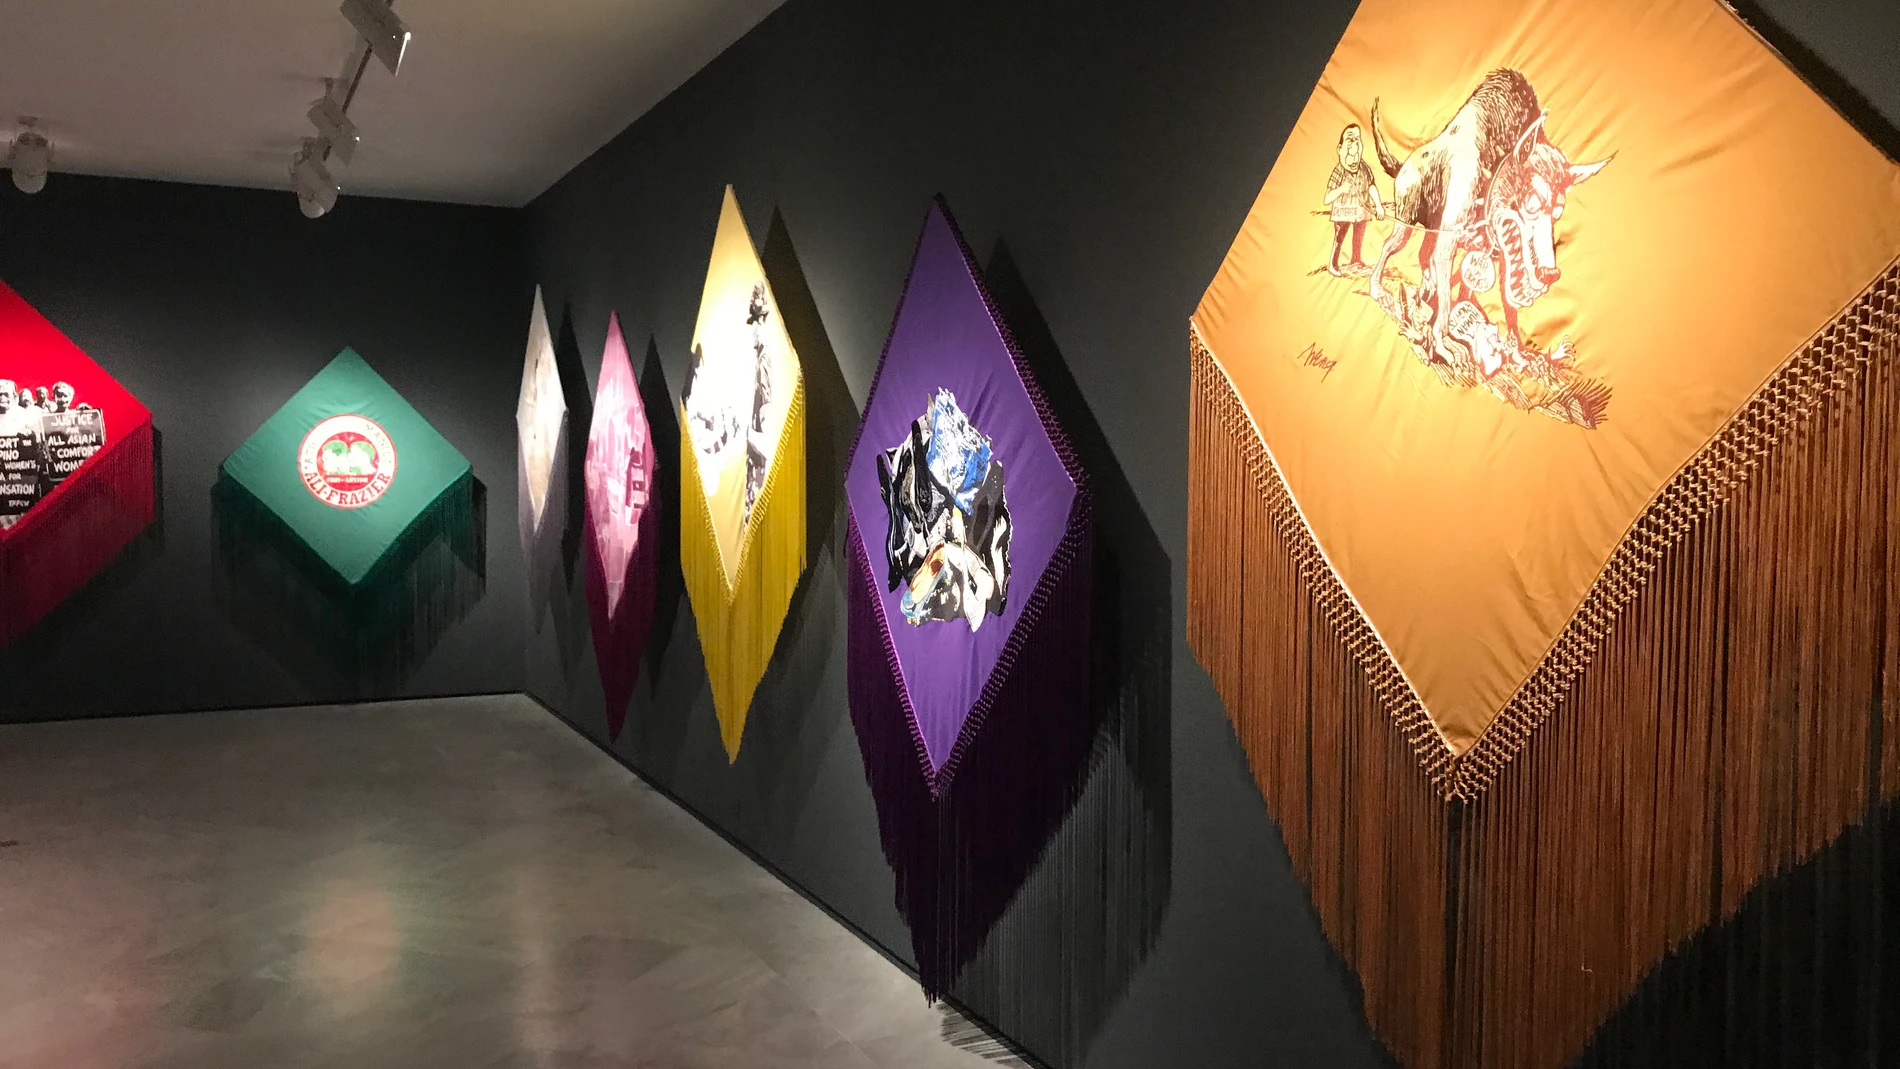 Hasta este domingo se puede visitar la interesante exposición sobre Antoni Muntadas en el Centro Andaluz de Arte Contemporáneo